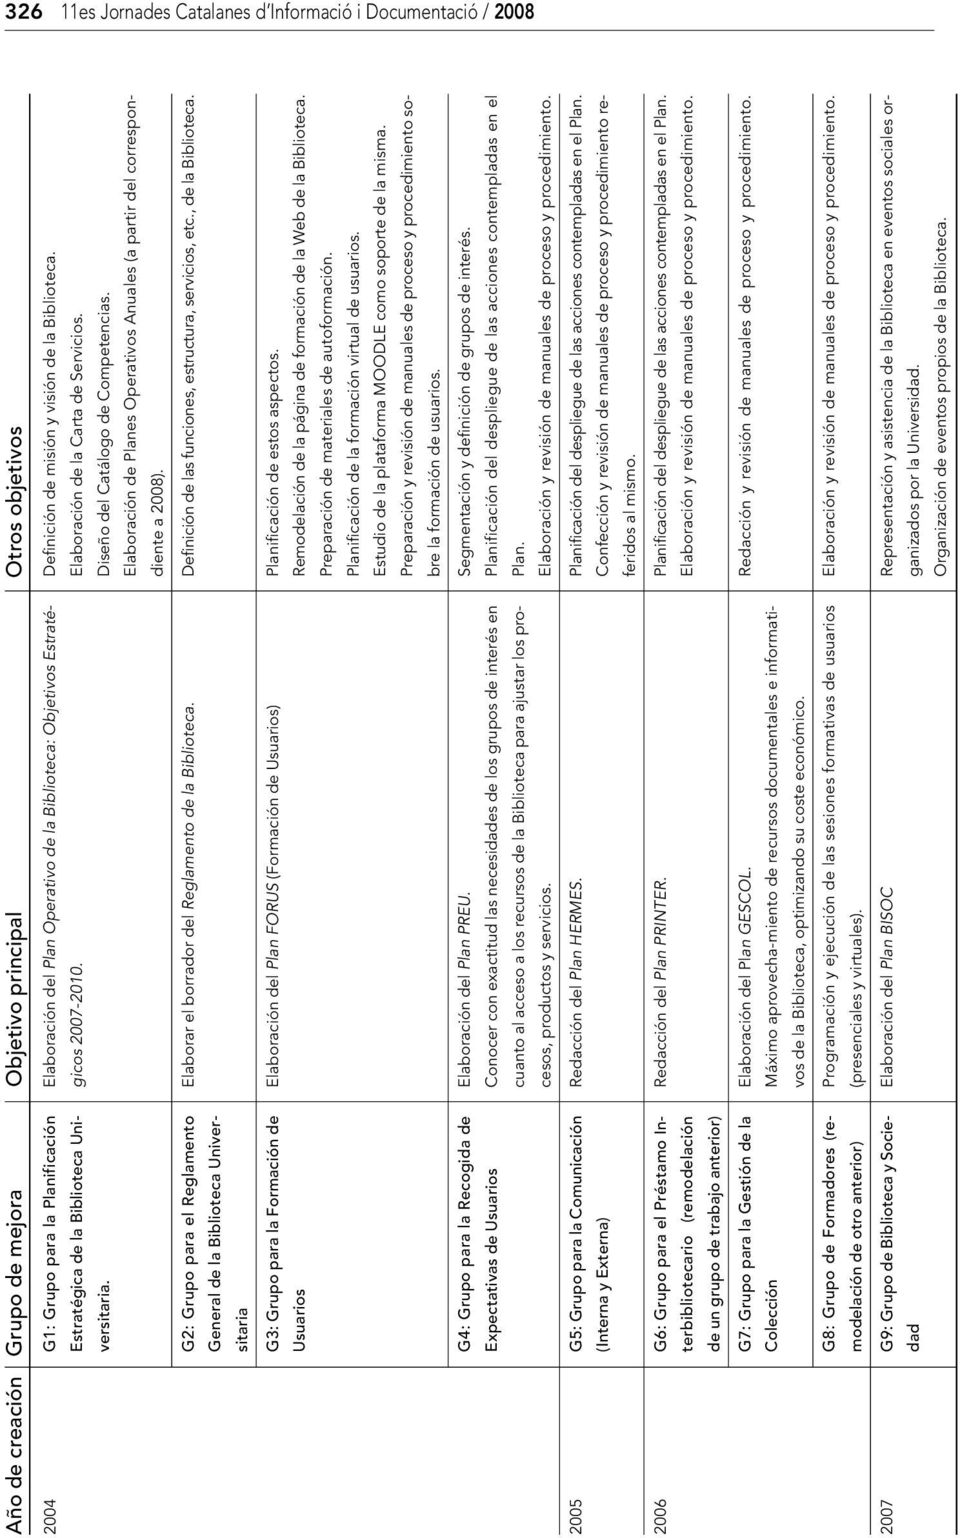 Diseño del Catálogo de Competencias. Elaboración de Planes Operativos Anuales (a partir del correspondiente a 2008). G2: Grupo para el Reglamento Elaborar el borrador del Reglamento de la Biblioteca.